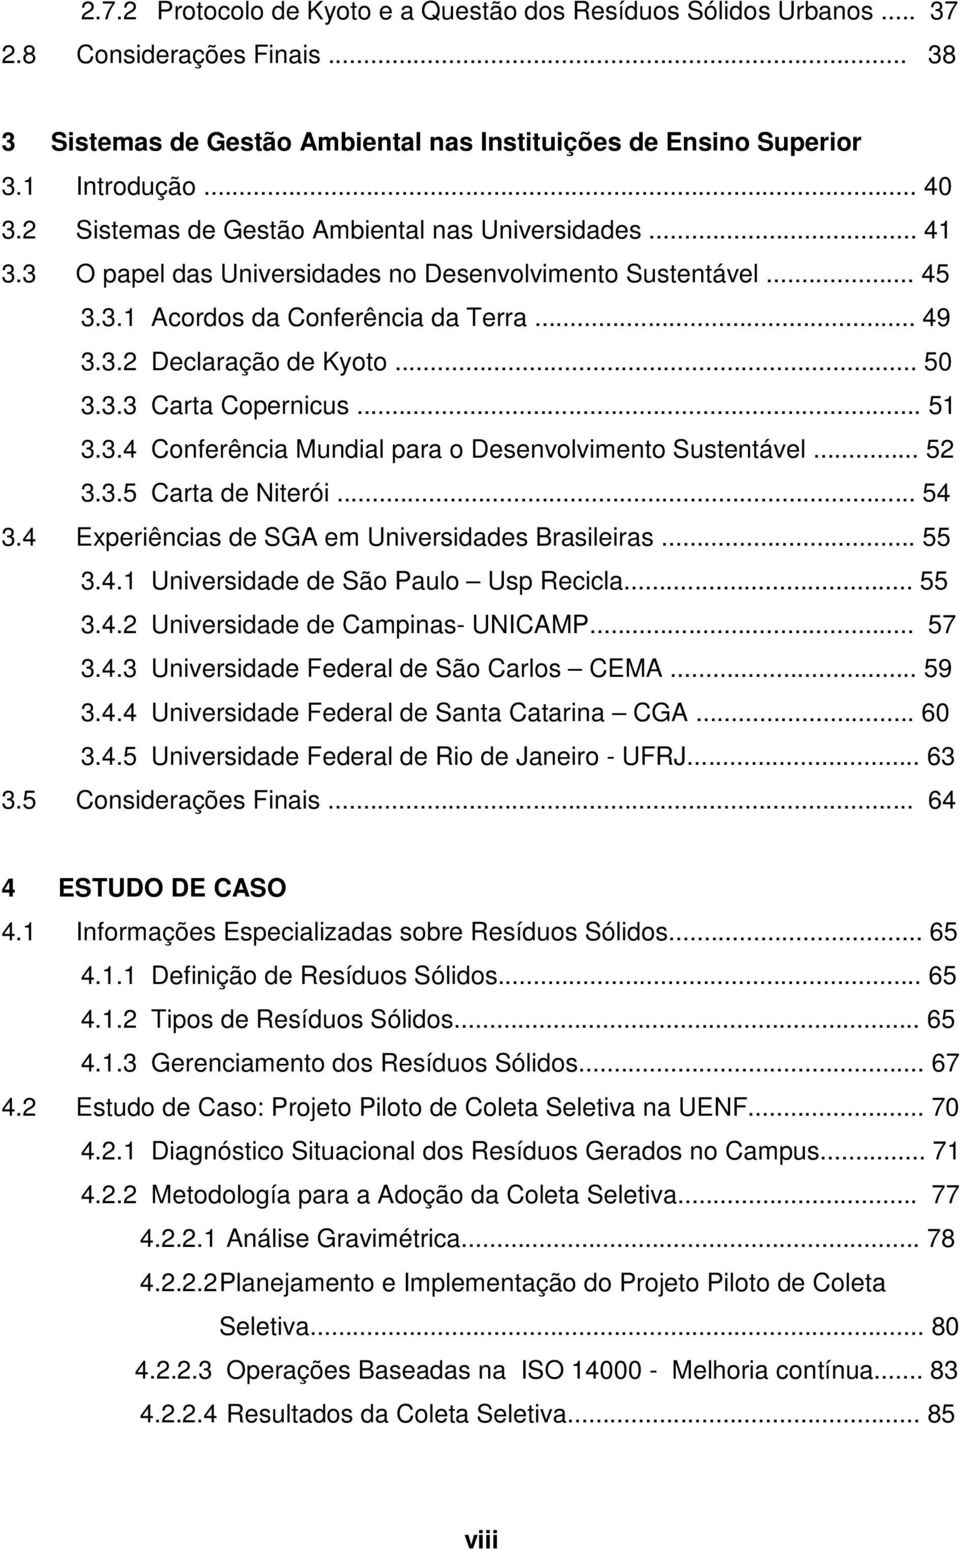 3.3 Carta Copernicus... 51 3.3.4 Conferência Mundial para o Desenvolvimento Sustentável... 52 3.3.5 Carta de Niterói... 54 3.4 Experiências de SGA em Universidades Brasileiras... 55 3.4.1 Universidade de São Paulo Usp Recicla.